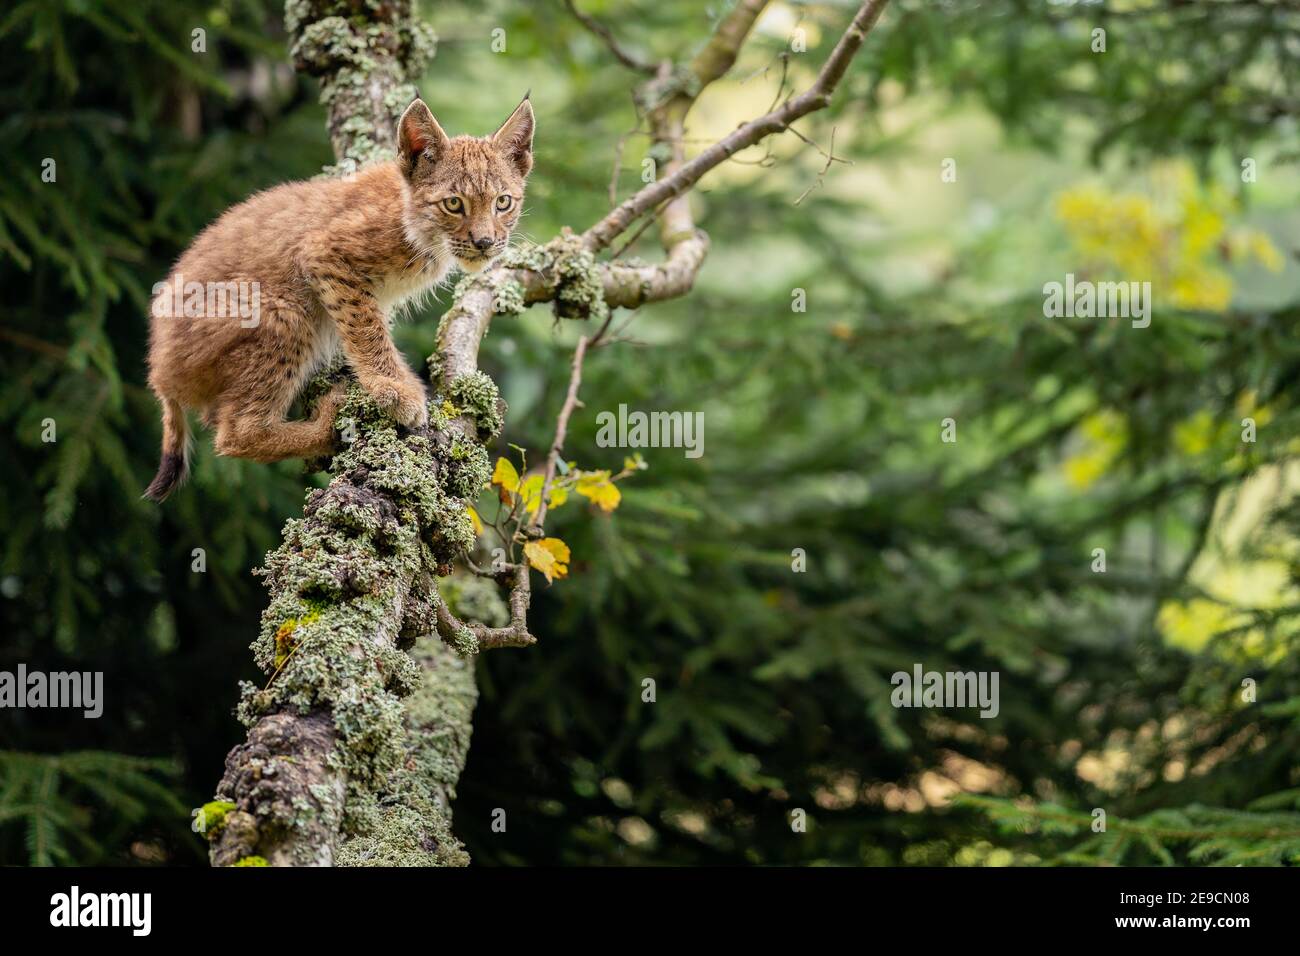 Lynx cub se arrastra sobre ramas de árboles cubiertas de liquen. Foto de un lince en un entorno forestal Foto de stock